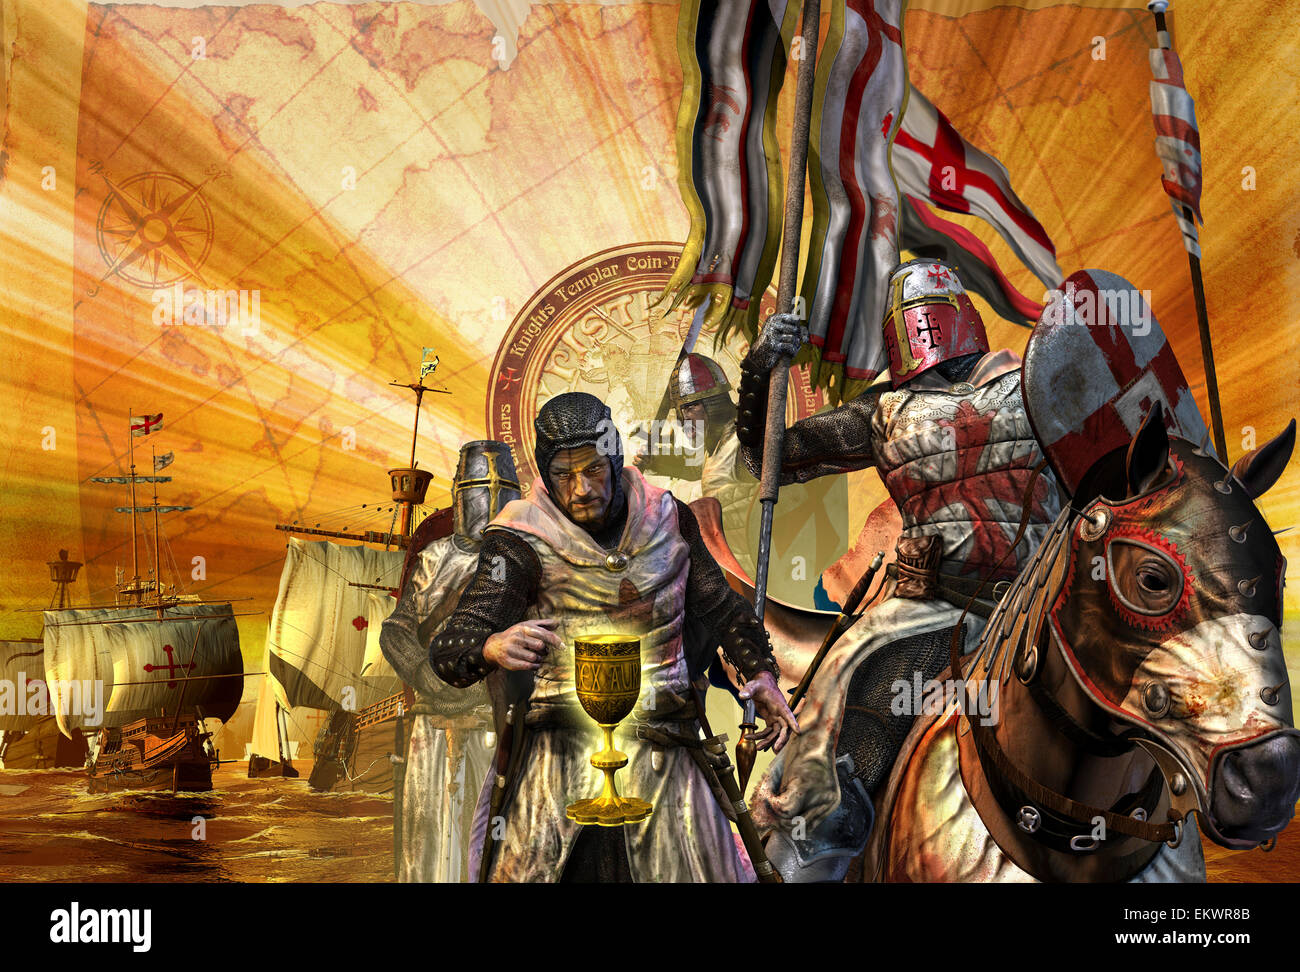 Cavalieri Templari sono su una missione per raccogliere le reliquie per la loro nazione. Foto Stock